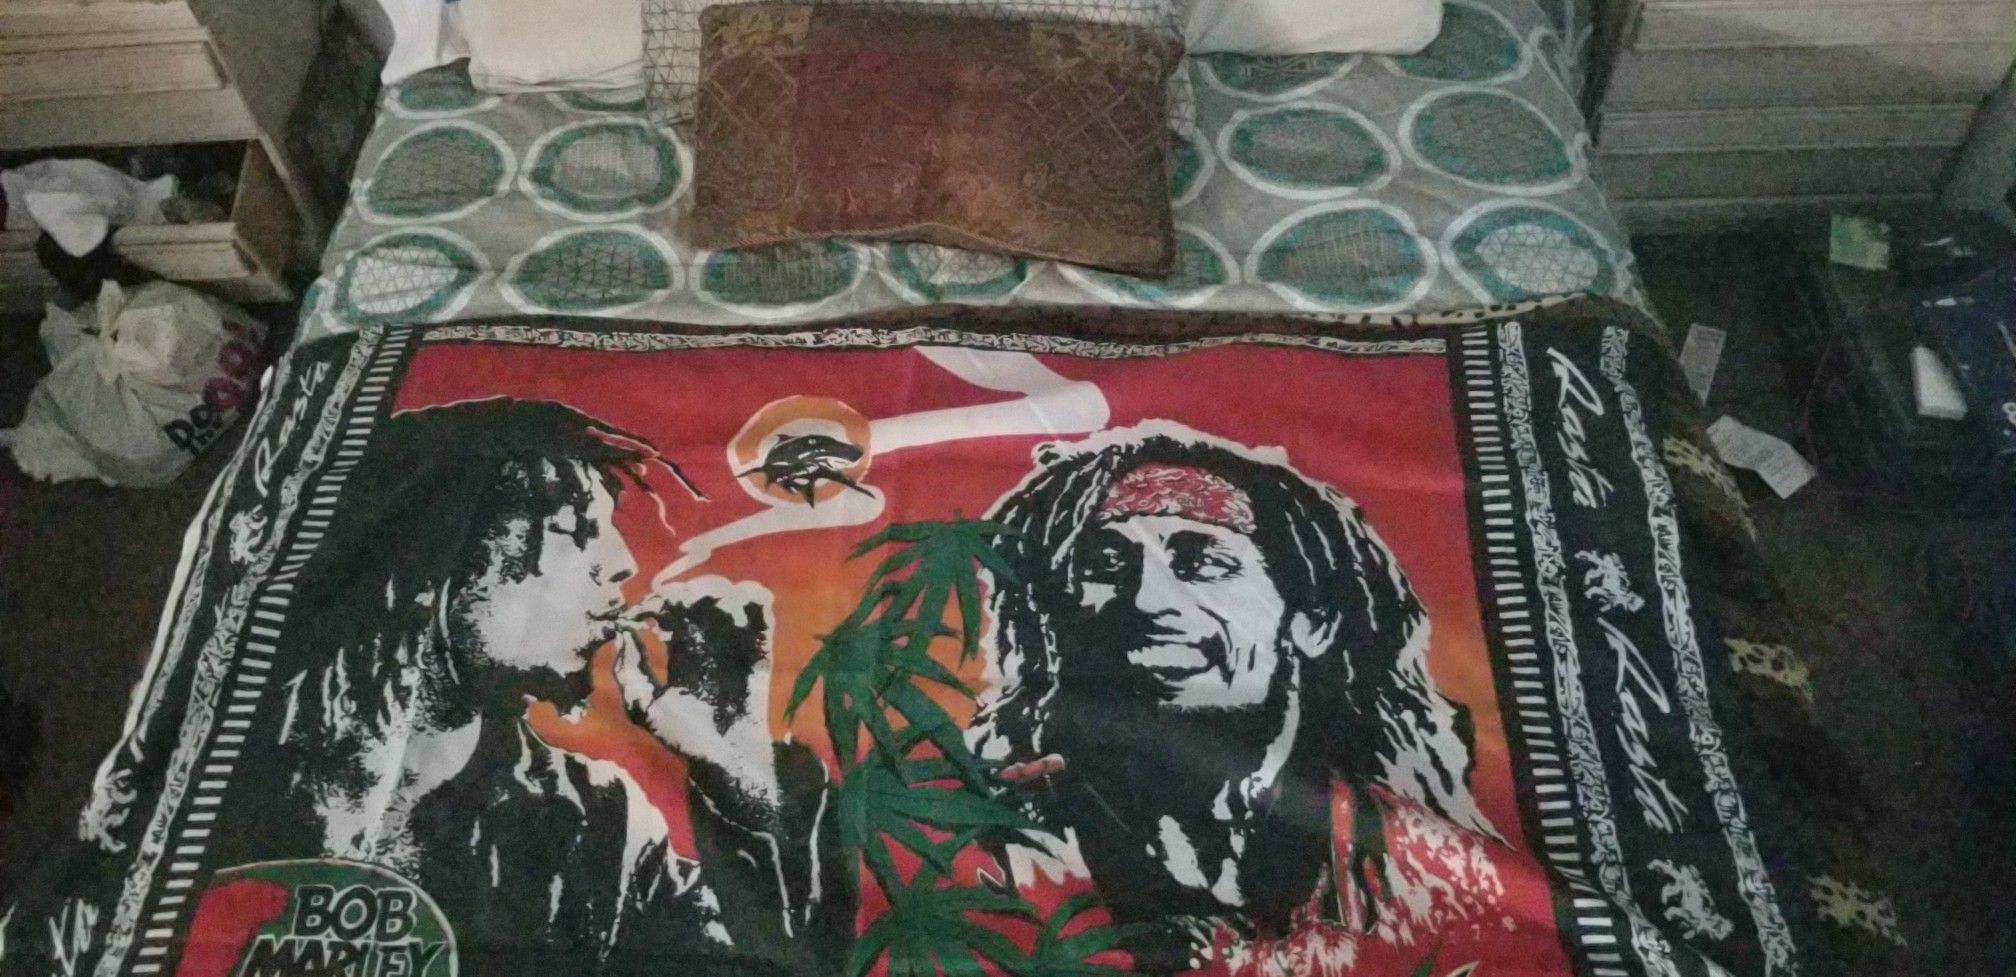 Bob Marley Rasta flag